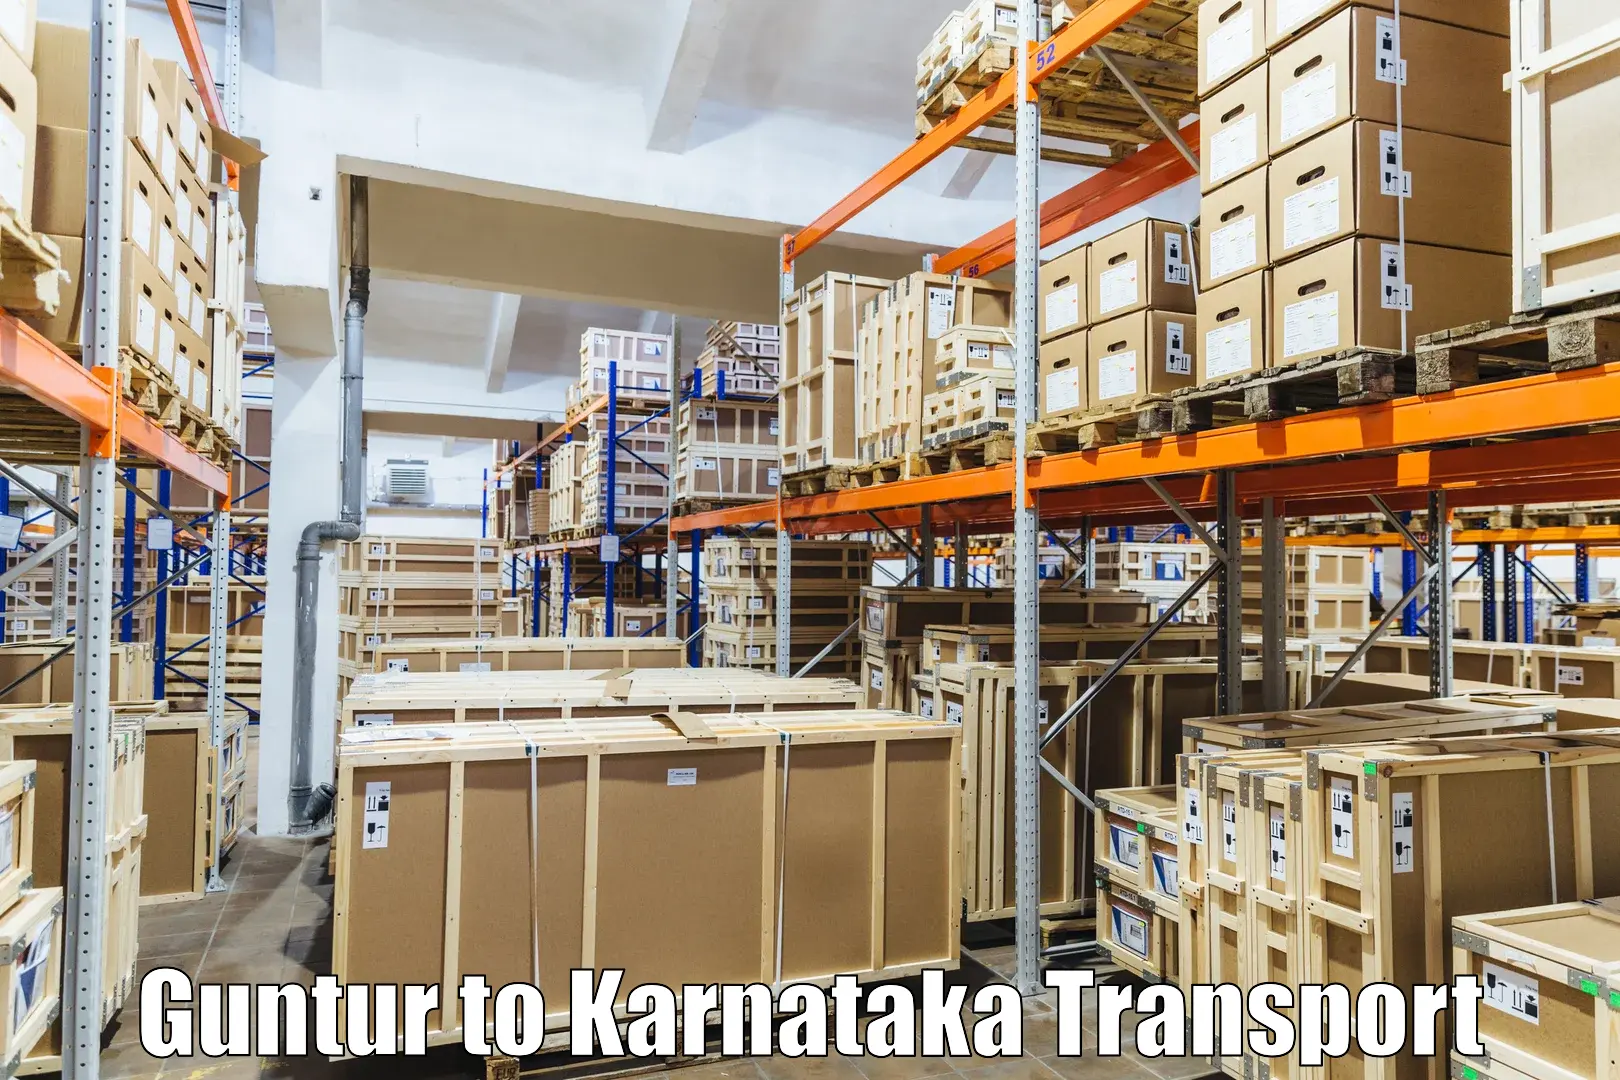 Pick up transport service Guntur to Kanjarakatte